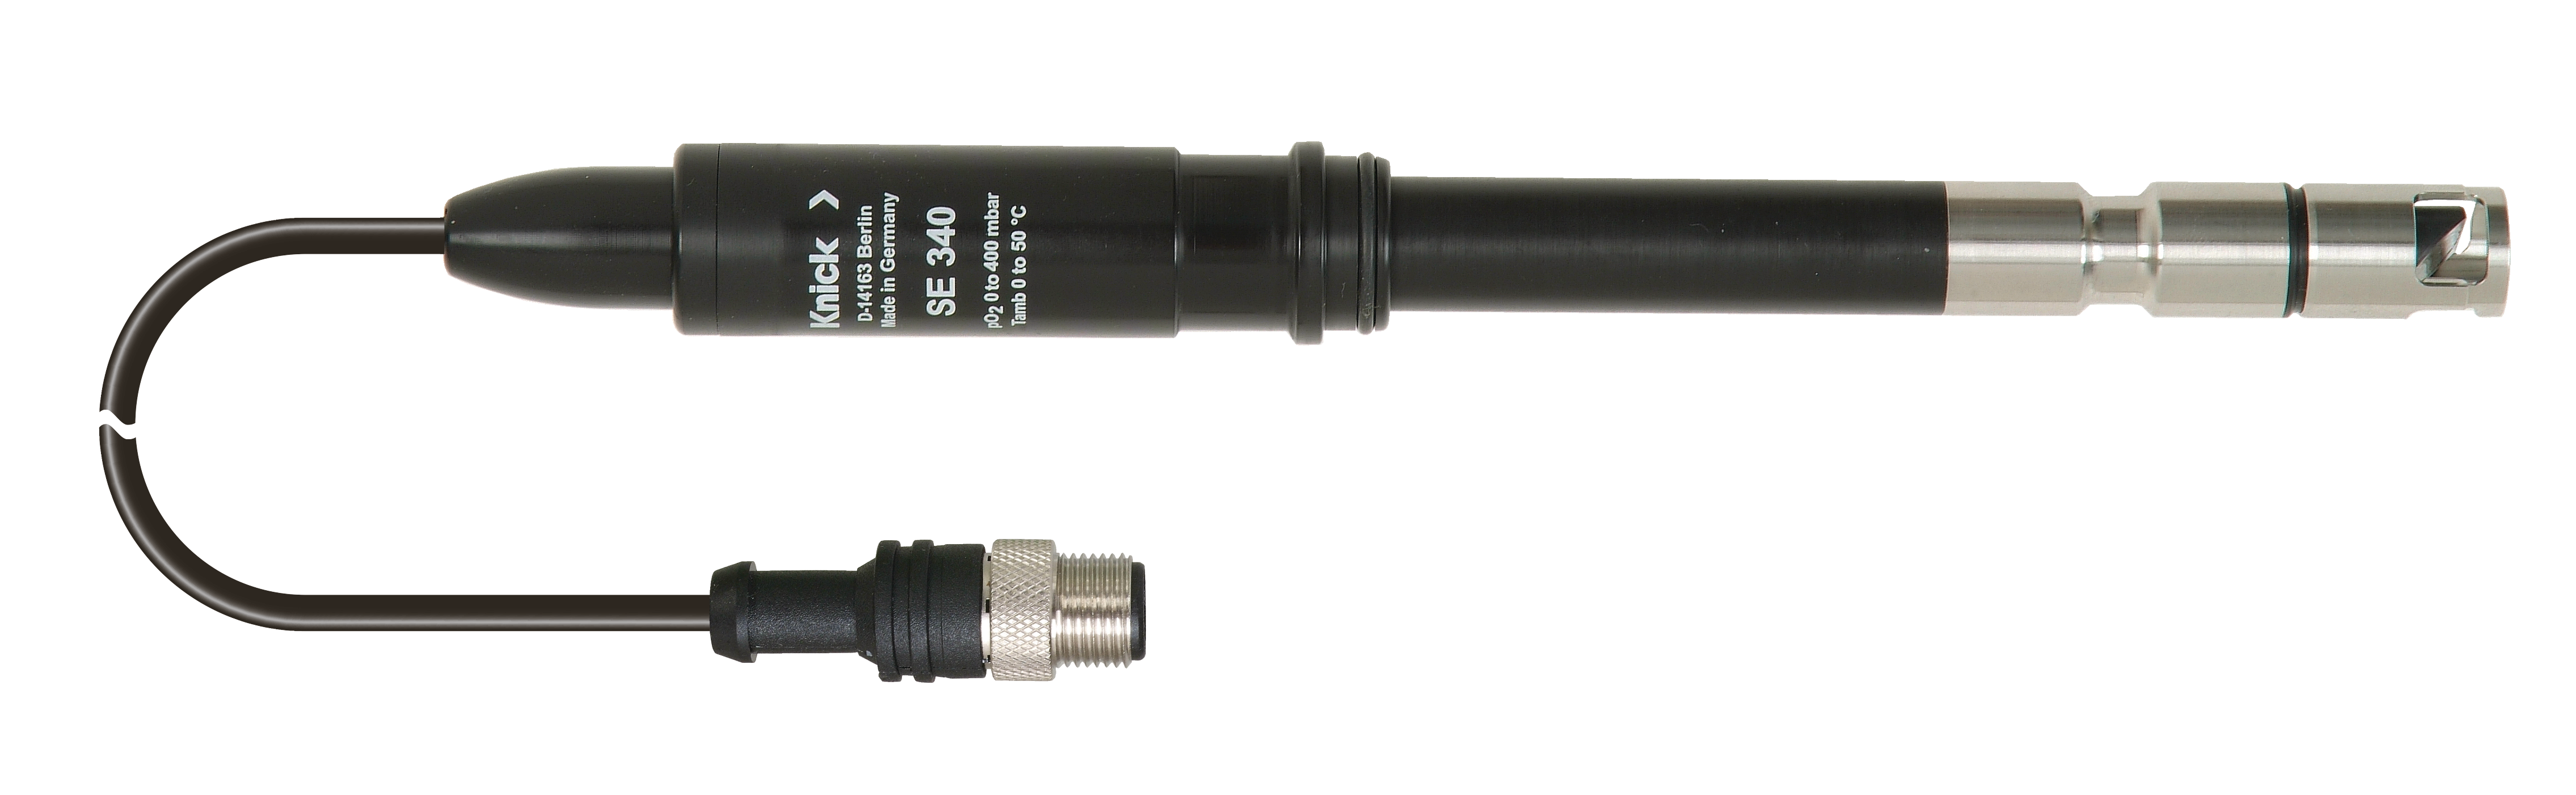 SE340 Optical Oxygen Sensor | Digital | POM / Stainless Steel Body | Flow-independent